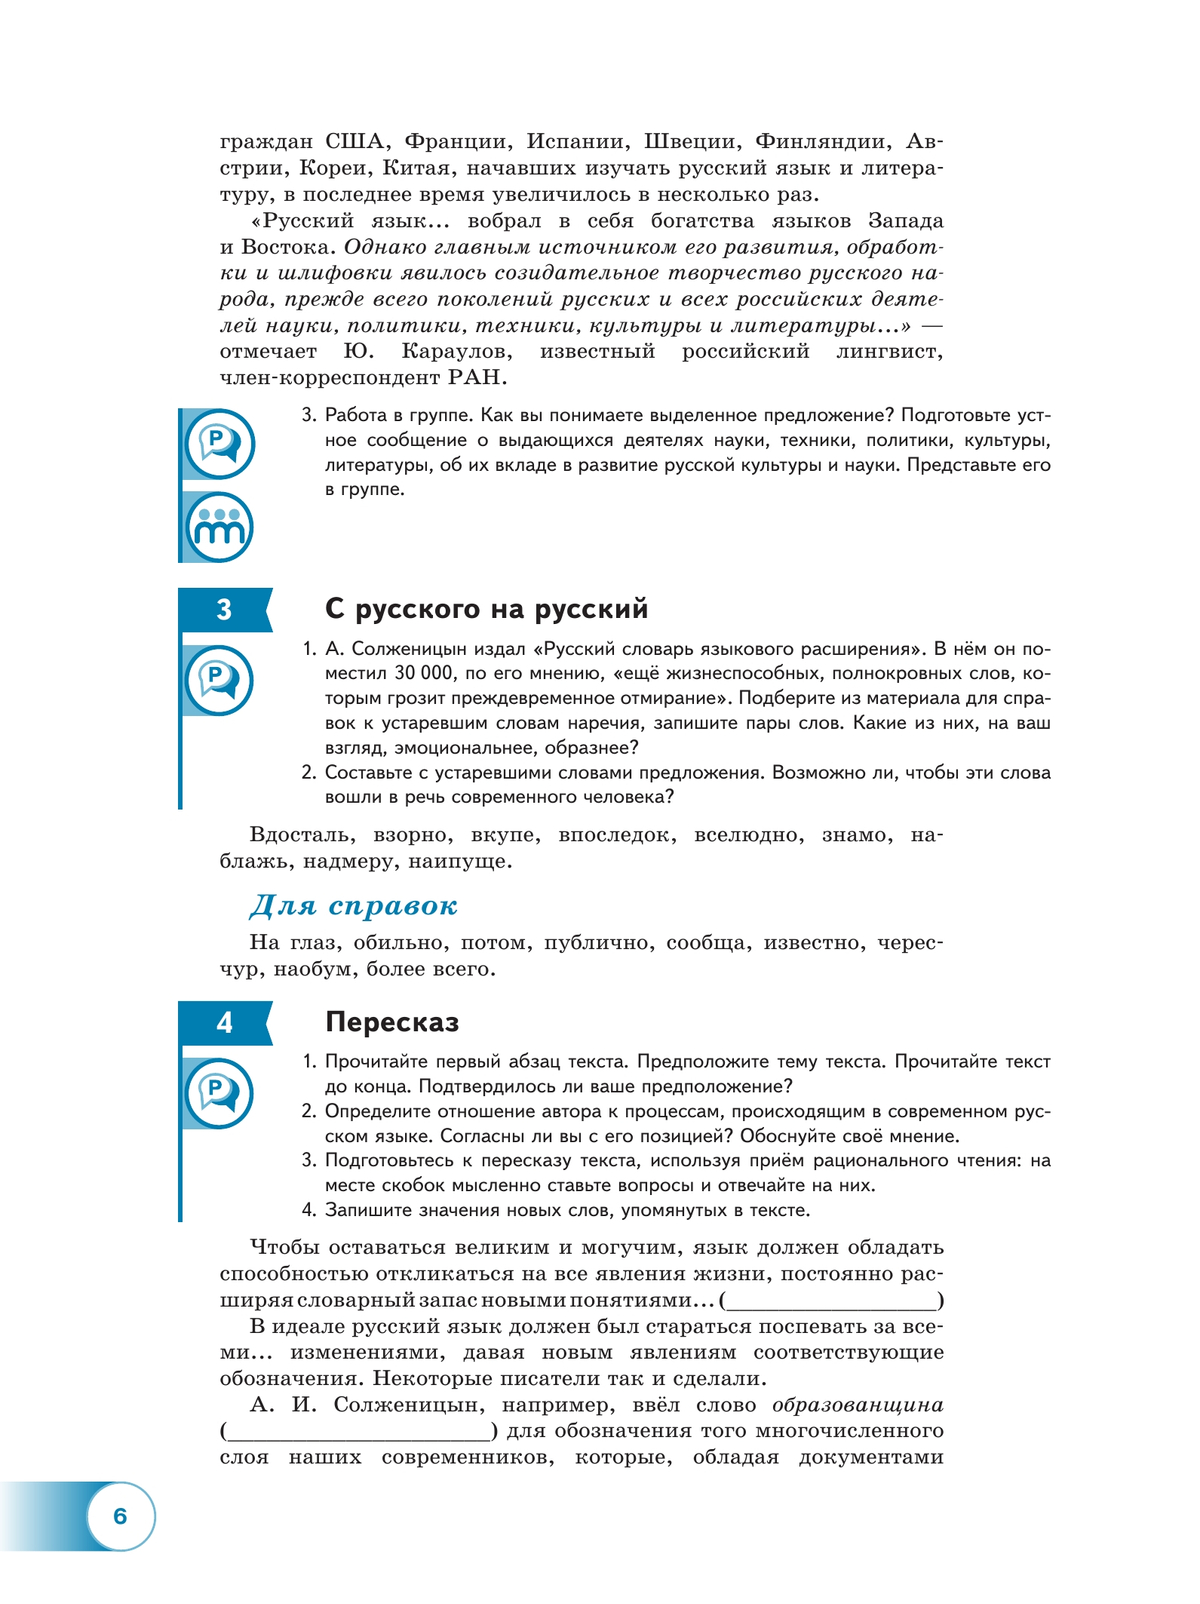 Русский язык. 10—11-е классы. Базовый уровень. В 2 частях. Часть 1. Учебное пособие 7